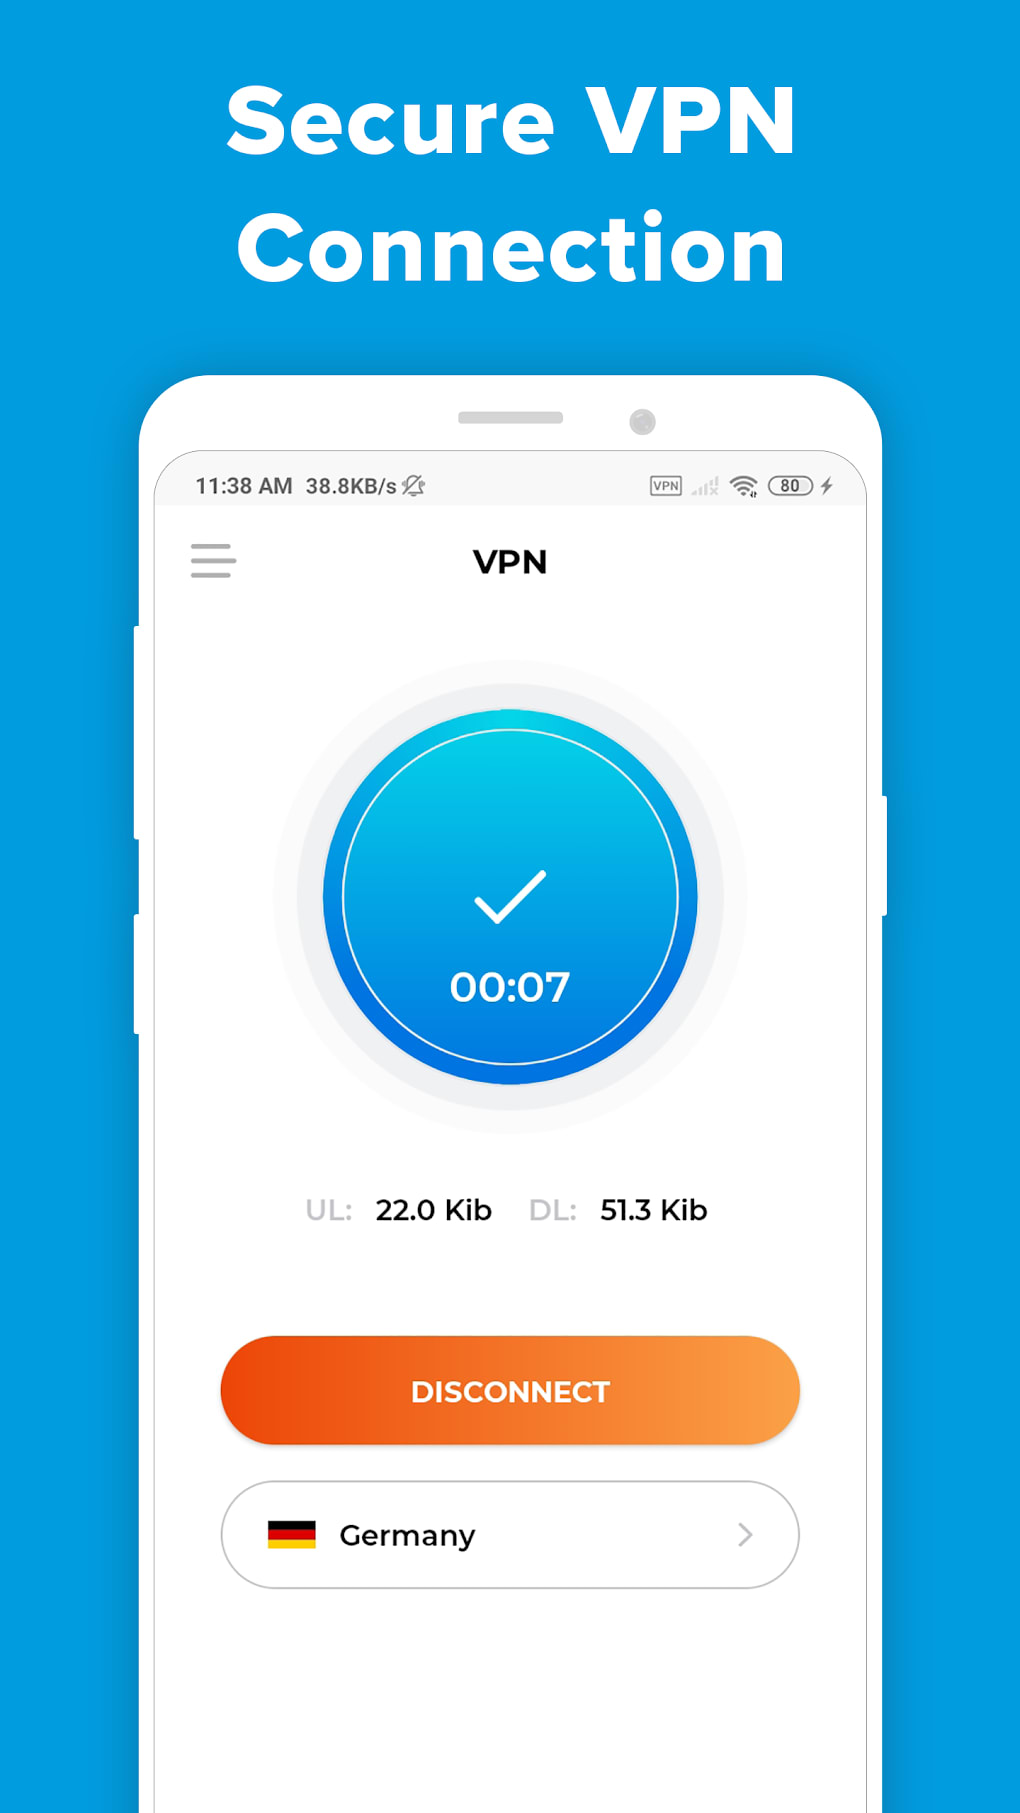 Share VPN Super APK (Download Grátis) - Android Aplicativo